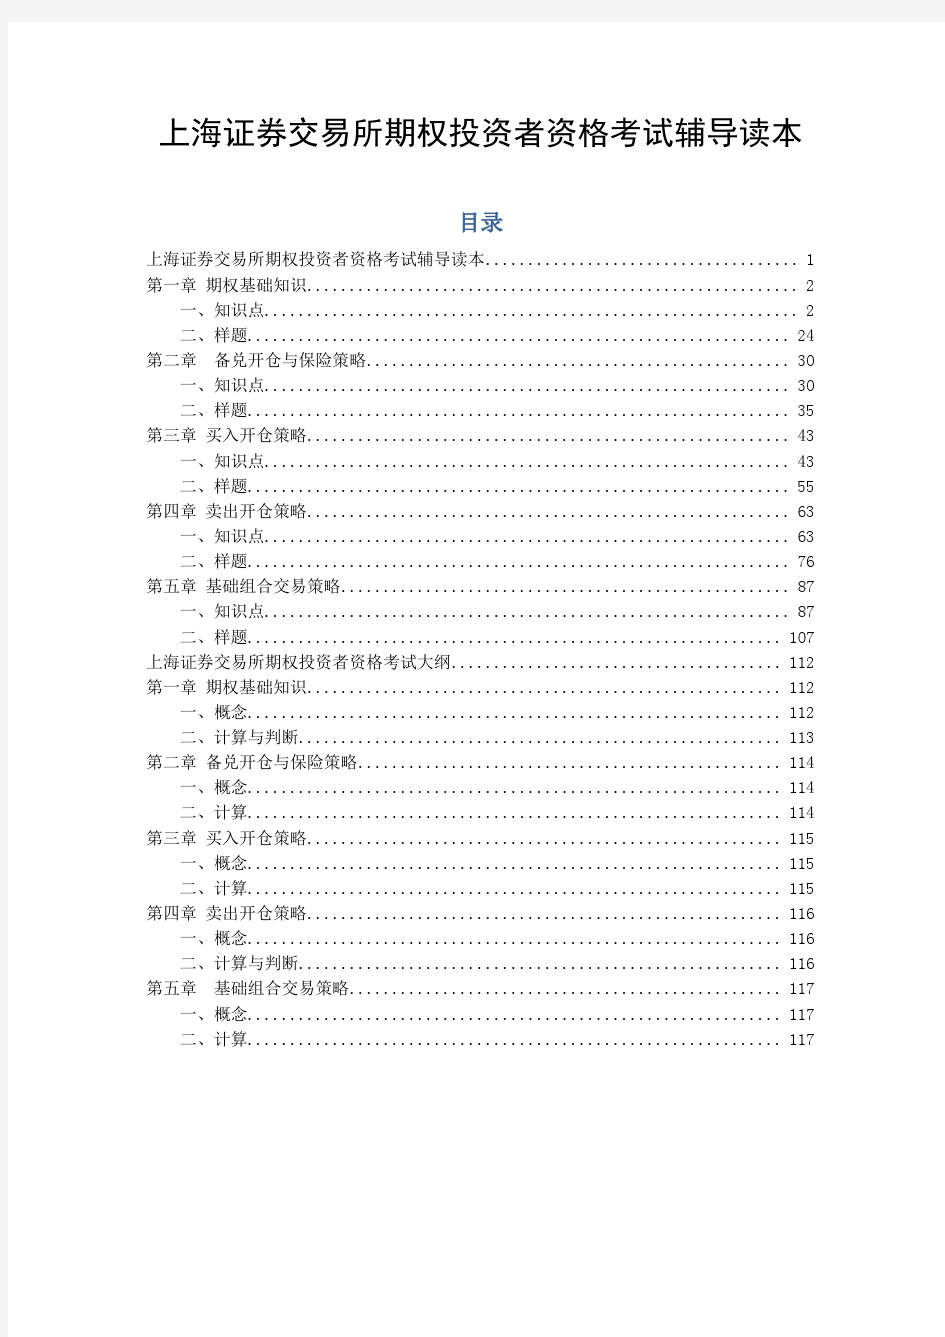 上海证券交易所期权投资者资格考试辅导读本